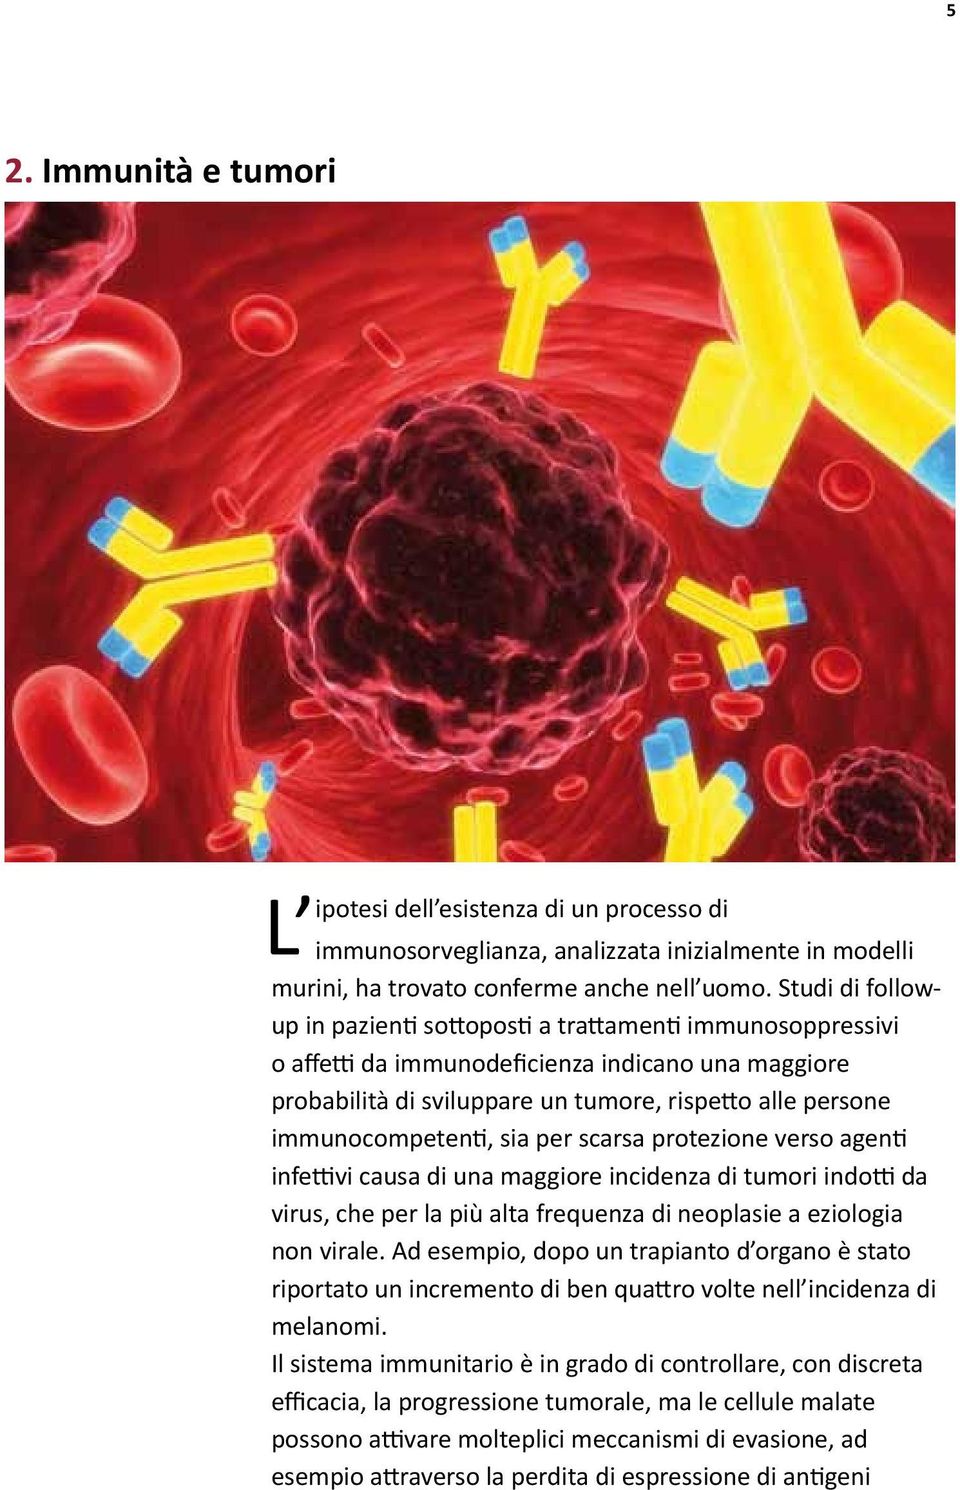 immunocompetenti, sia per scarsa protezione verso agenti infettivi causa di una maggiore incidenza di tumori indotti da virus, che per la più alta frequenza di neoplasie a eziologia non virale.